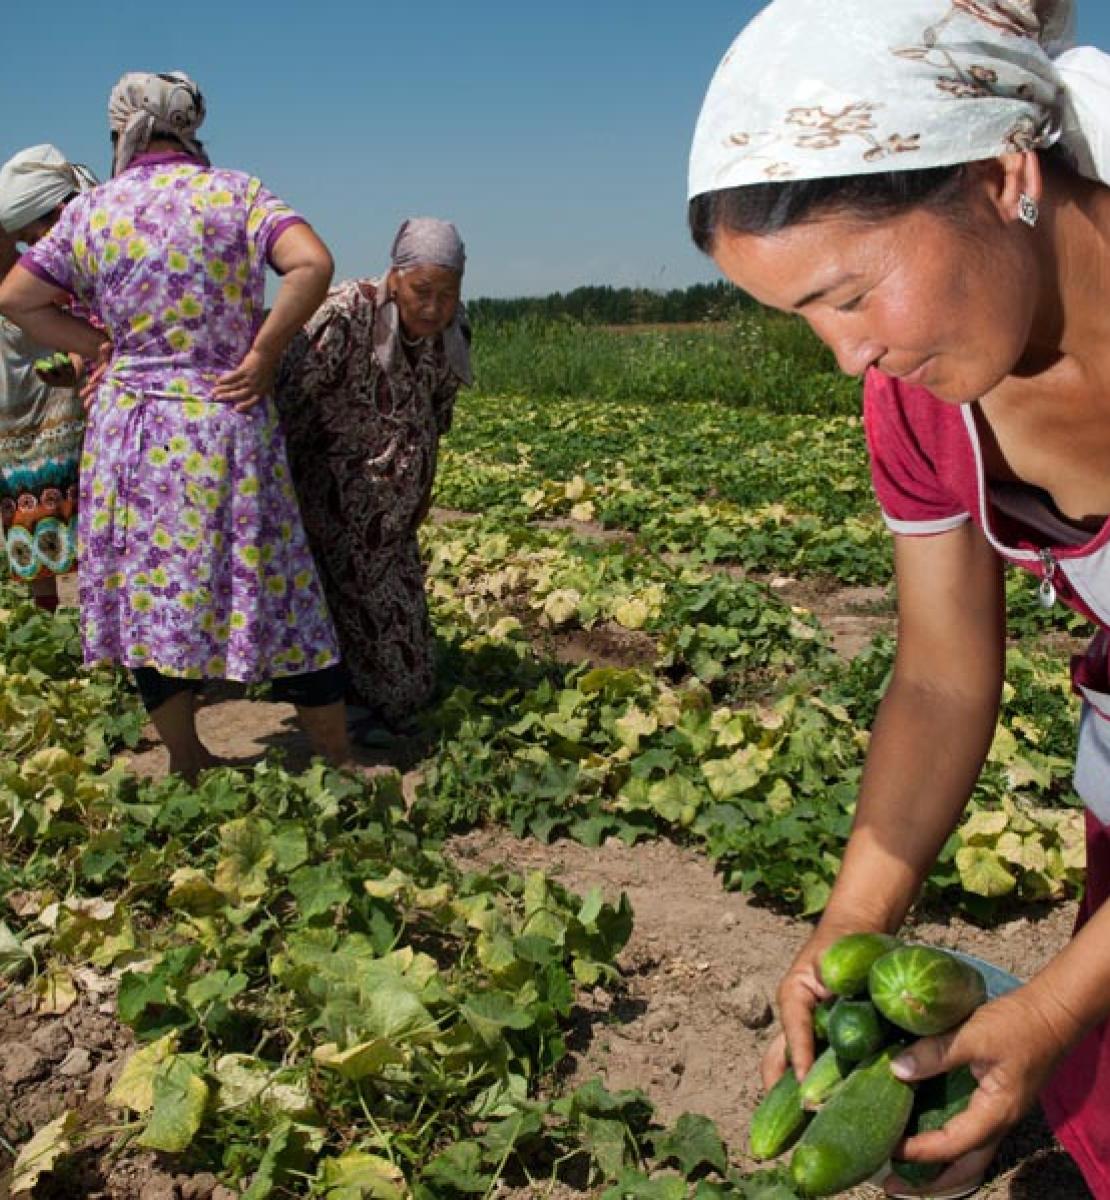 Women work in a field, harvesting crops.